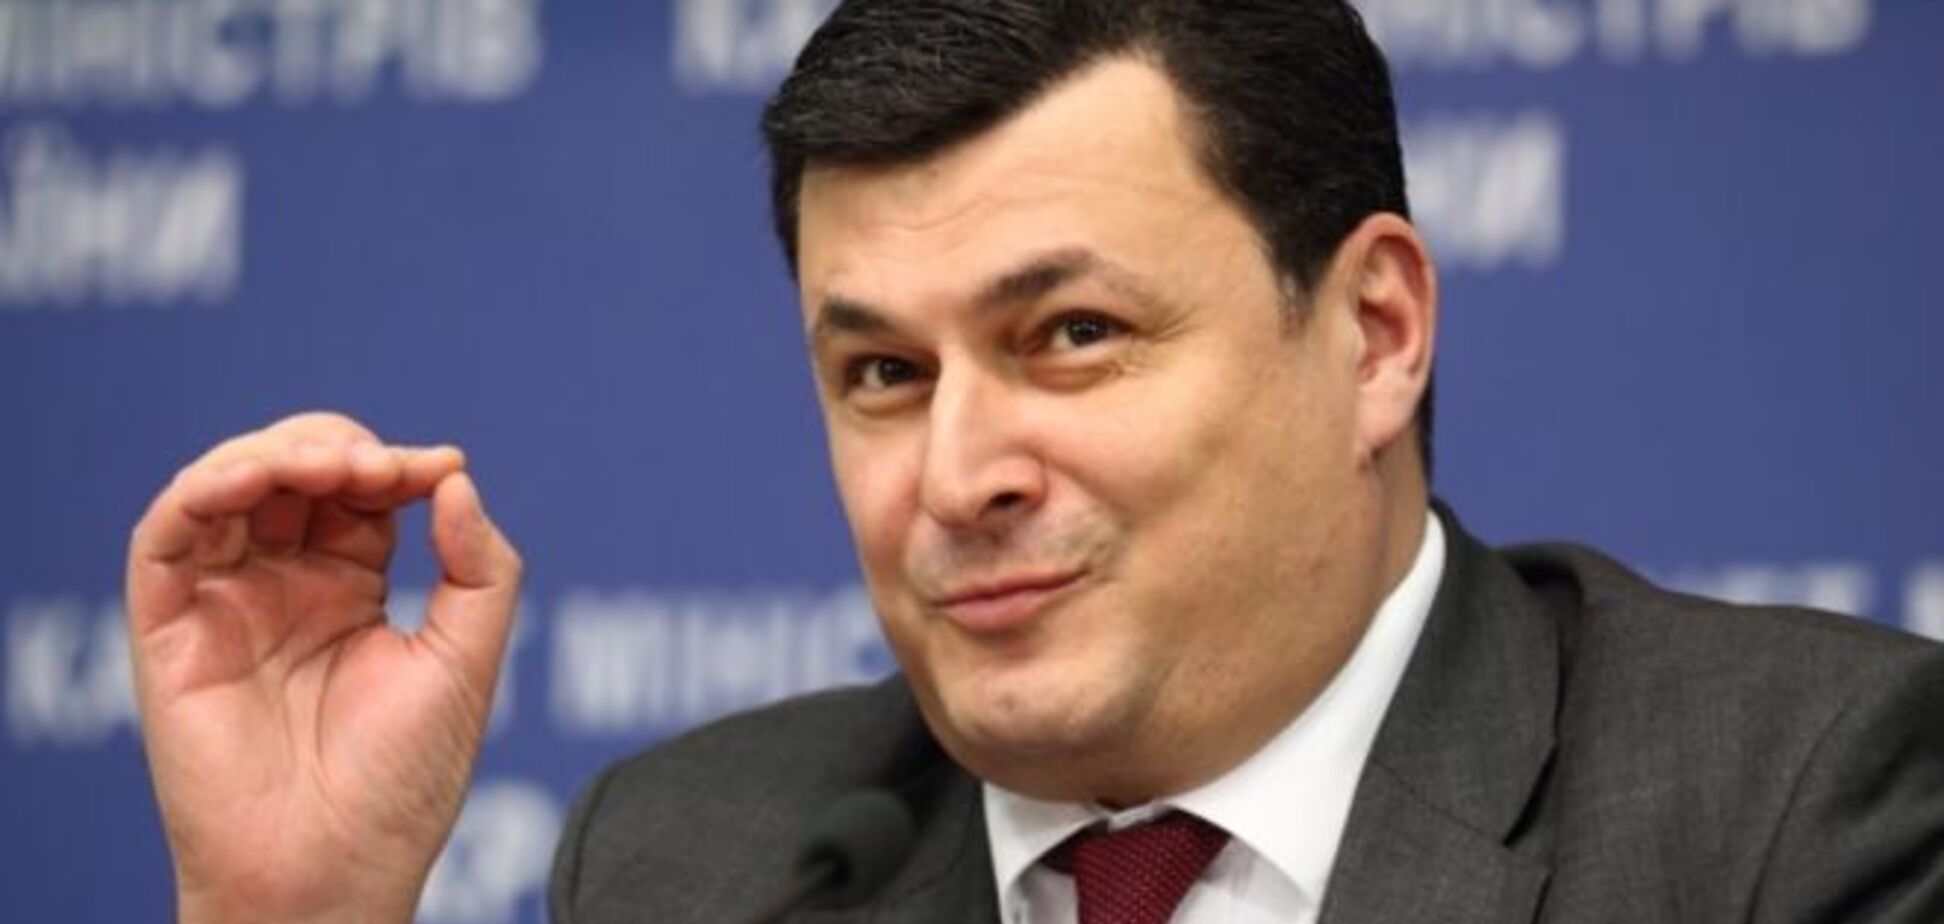 Отставка Квиташвили: Портников пояснил, почему иностранец во власти - не панацея